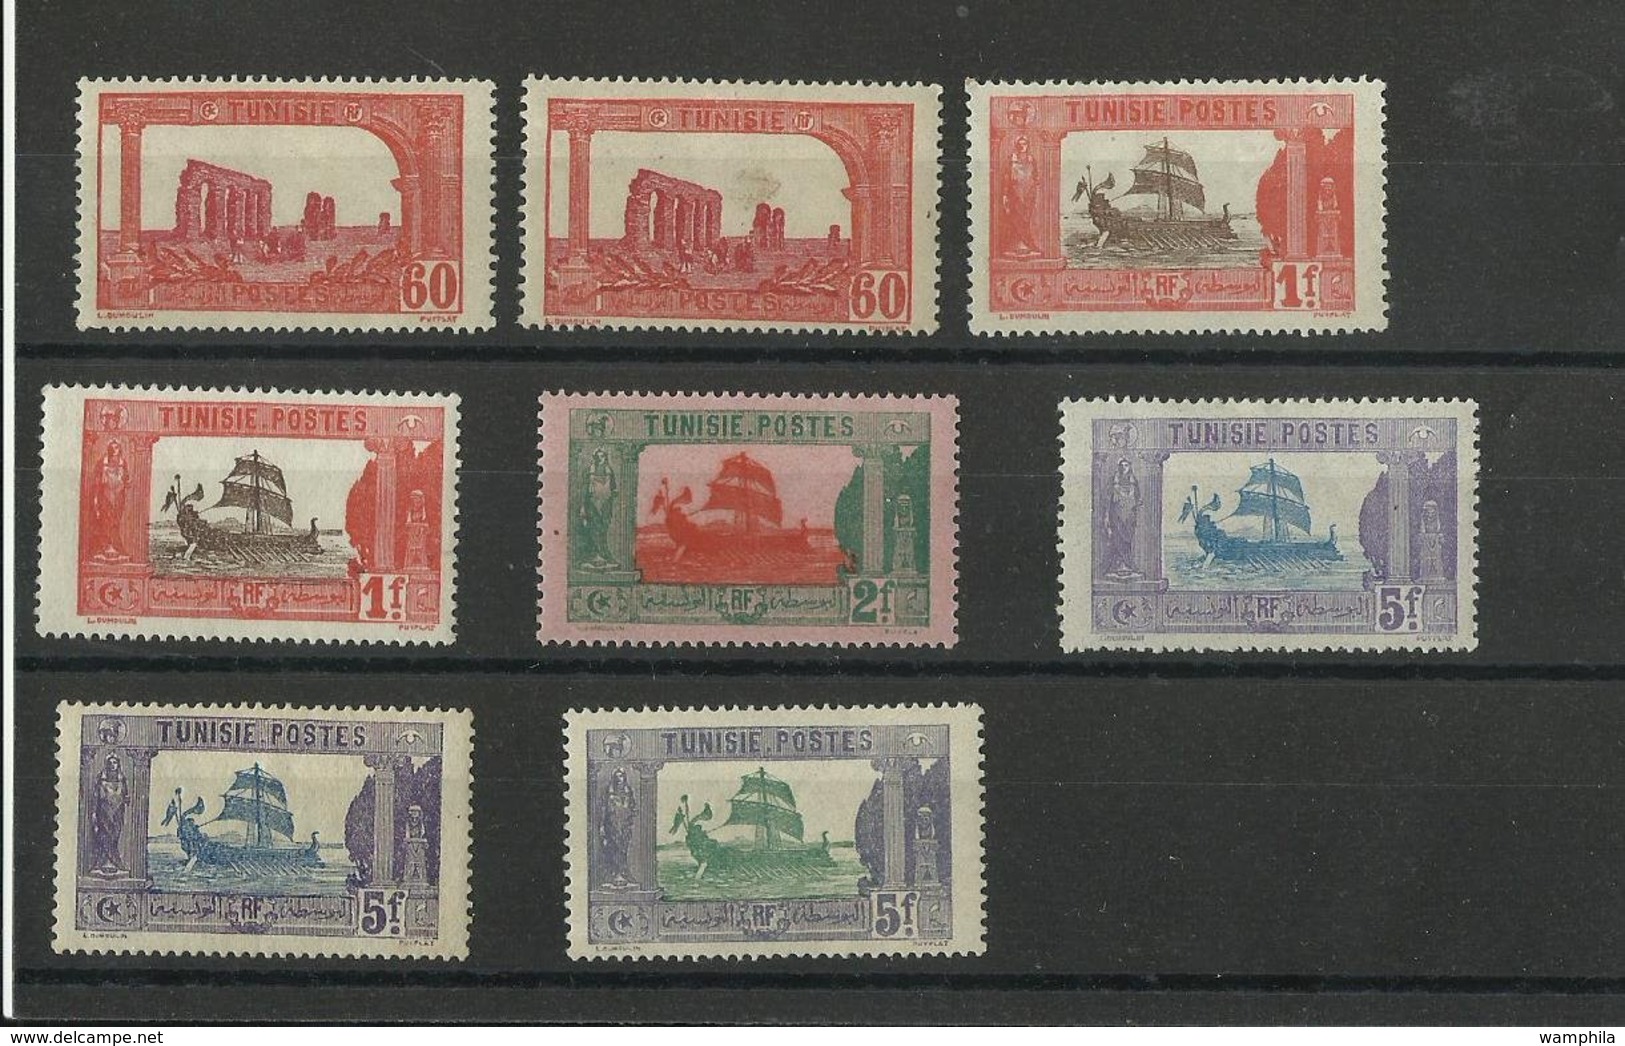 Tunisie, un lot de timbres neufs**/ */ Oblitérés (9 scanns)